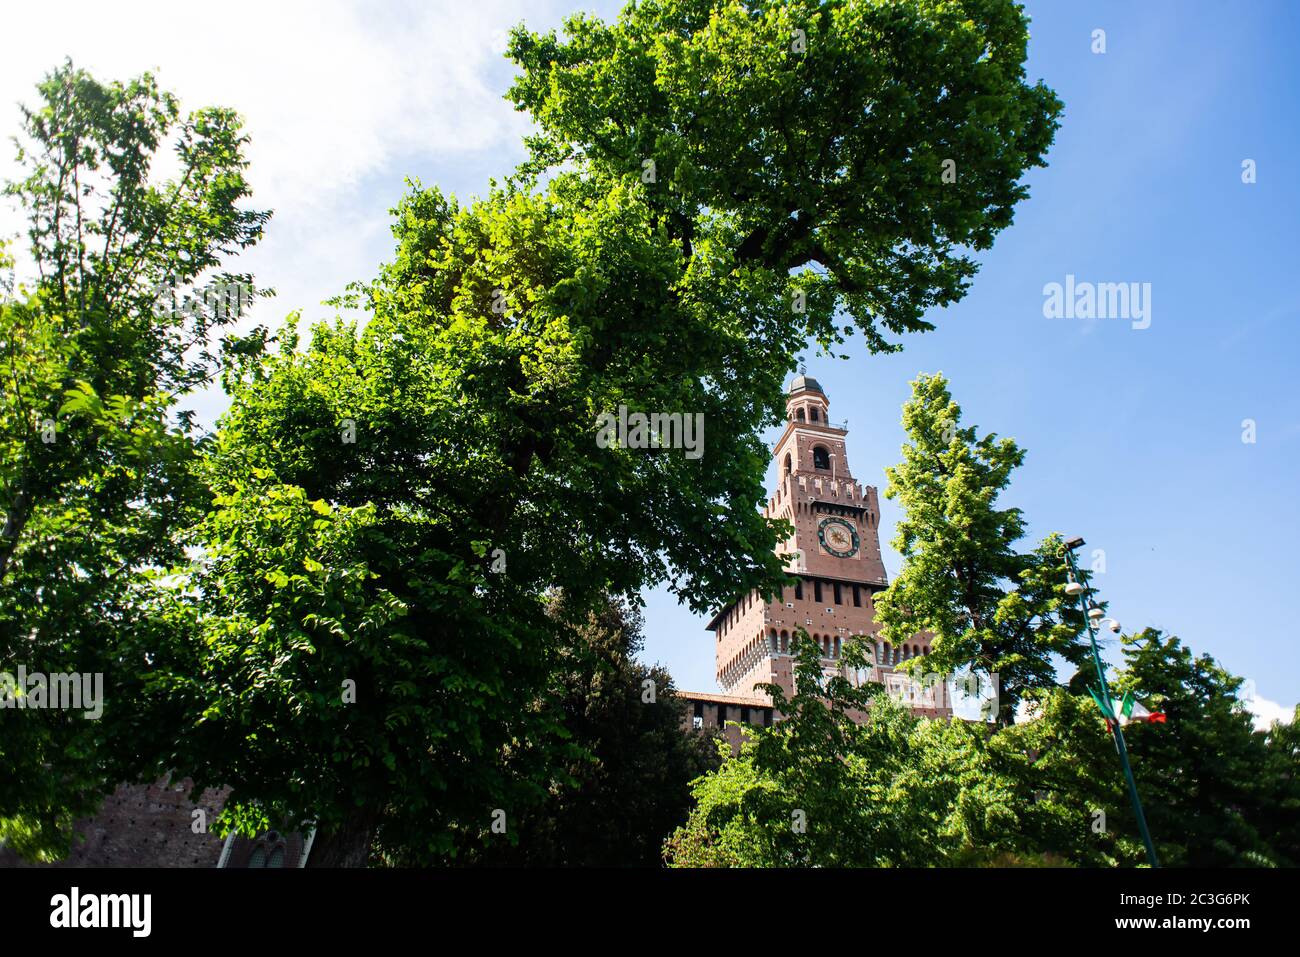 Burg Sforza. Filarete Tower. Blauer Himmel. Sonniger Tag. Ansicht durch den Baum. Stockfoto